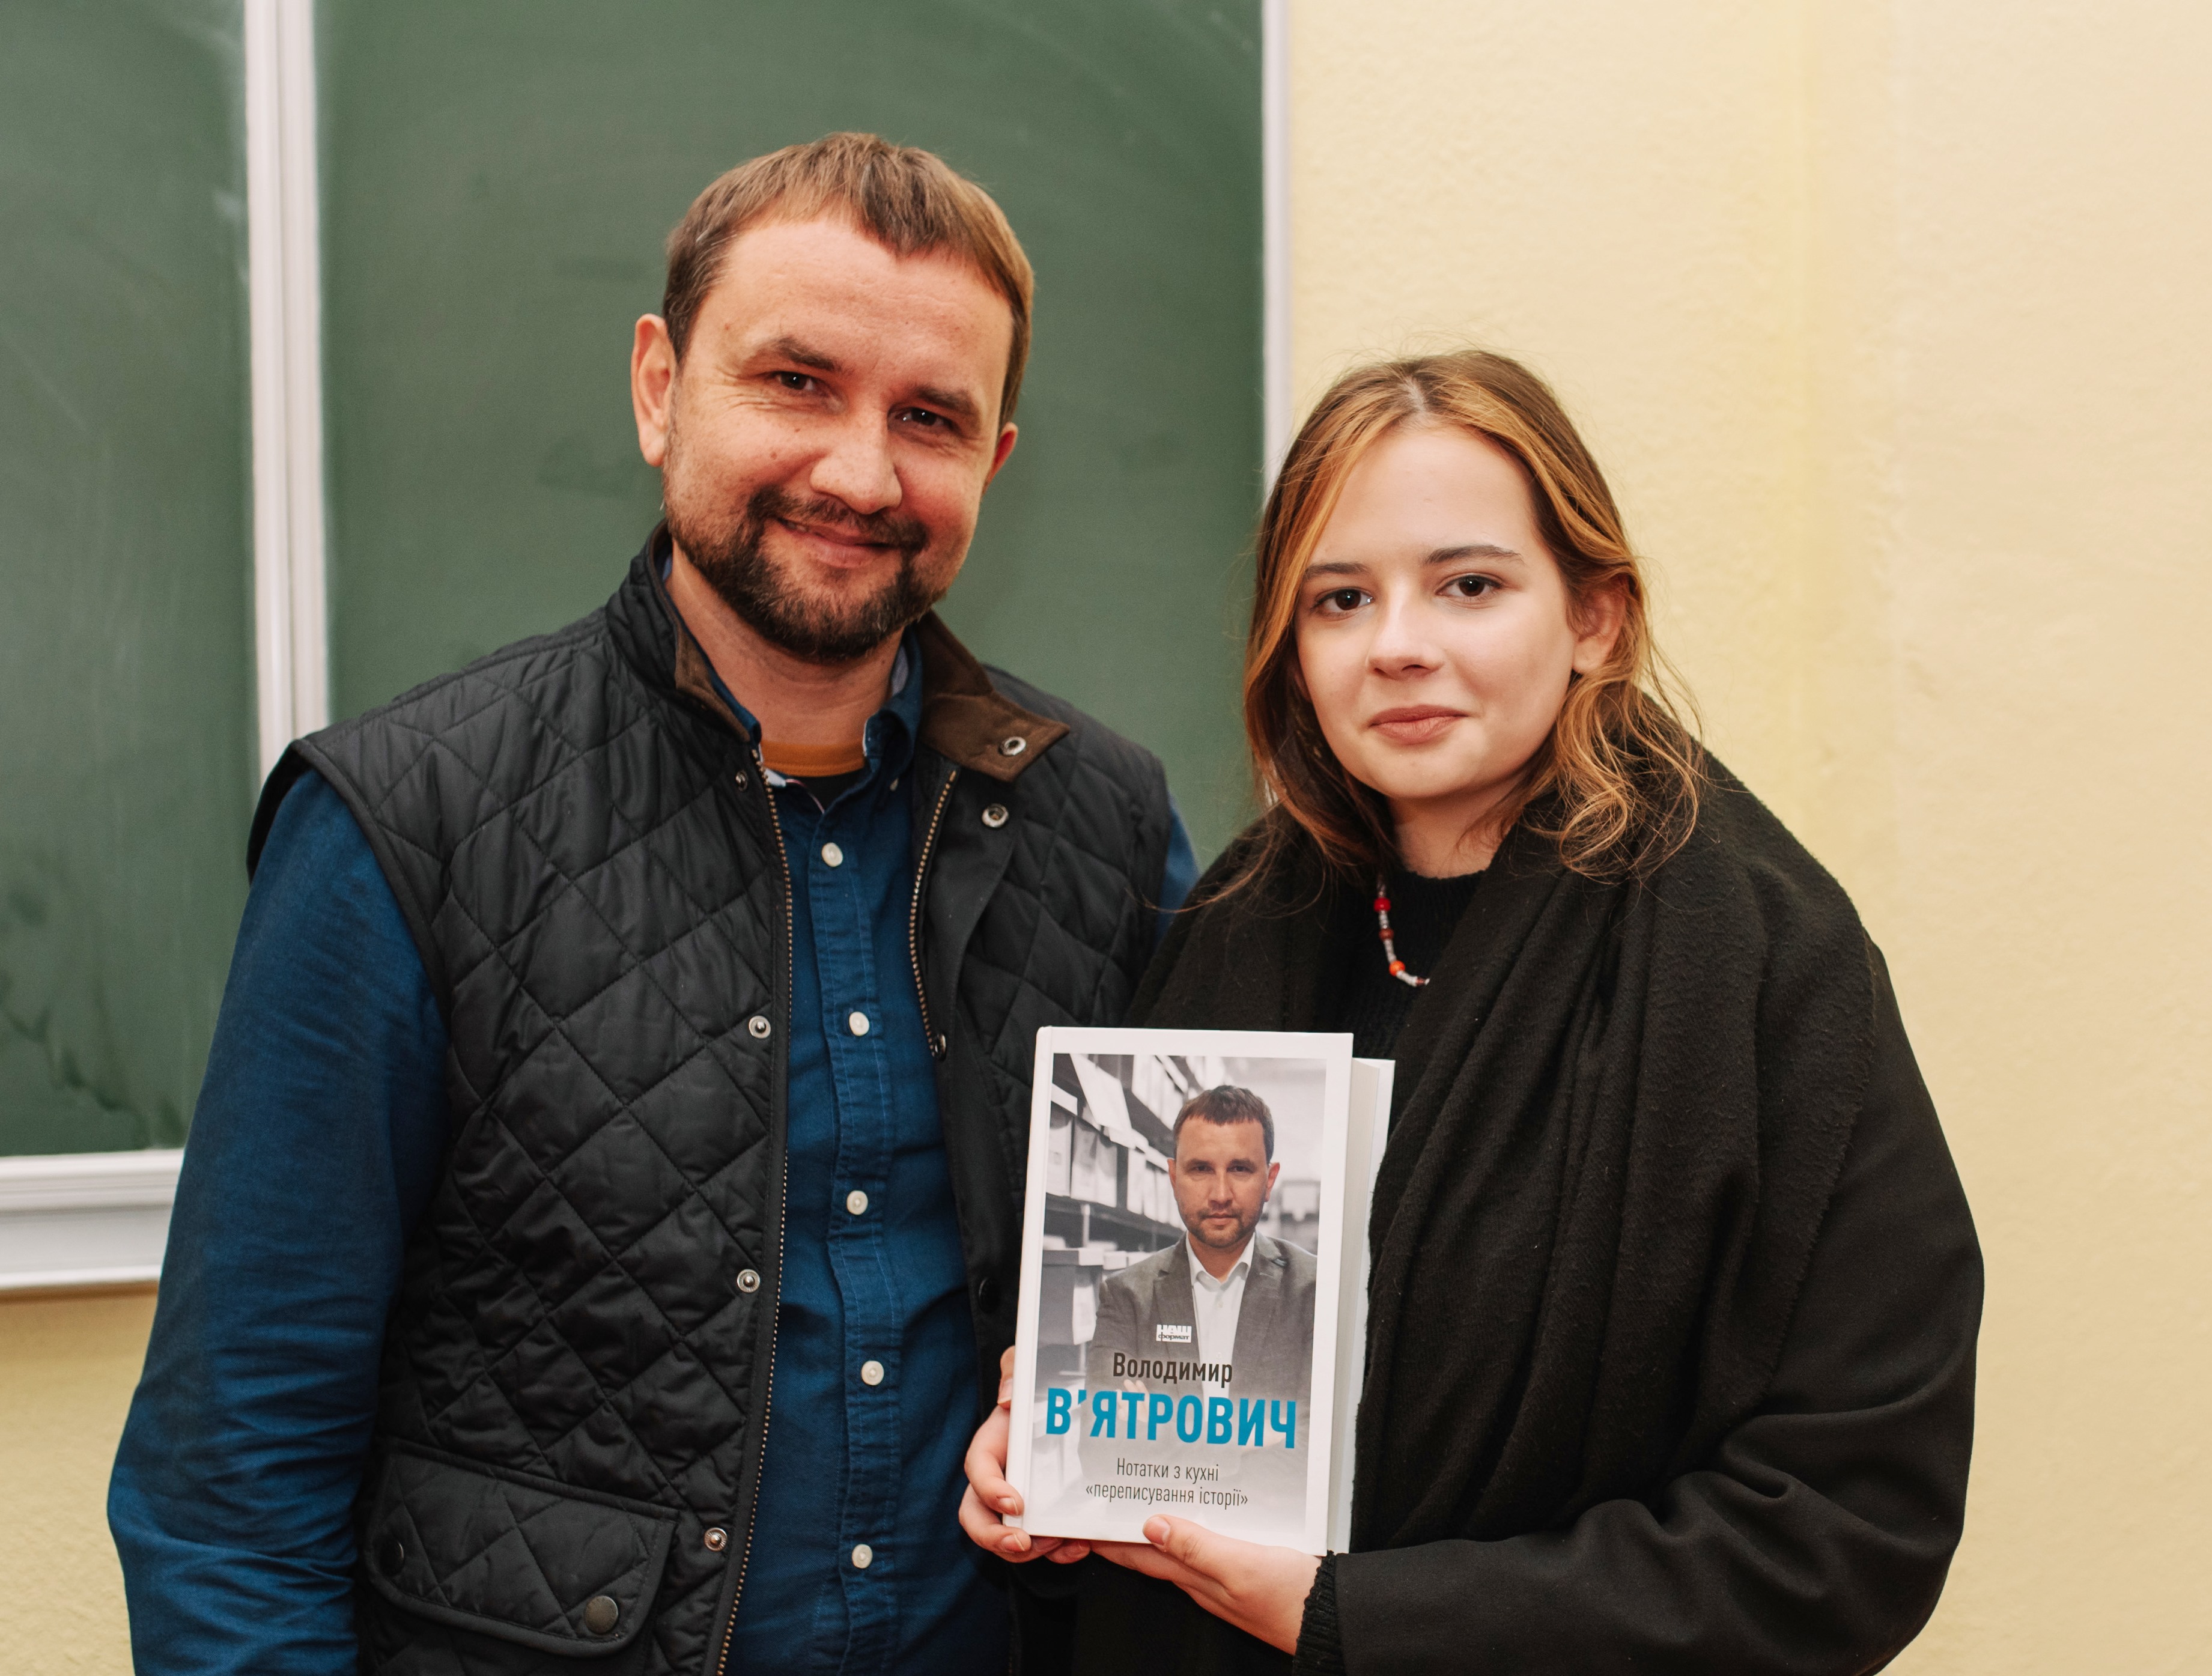 В руках із новою книгою (В. В_ятрович та студентка М. Гайдук)